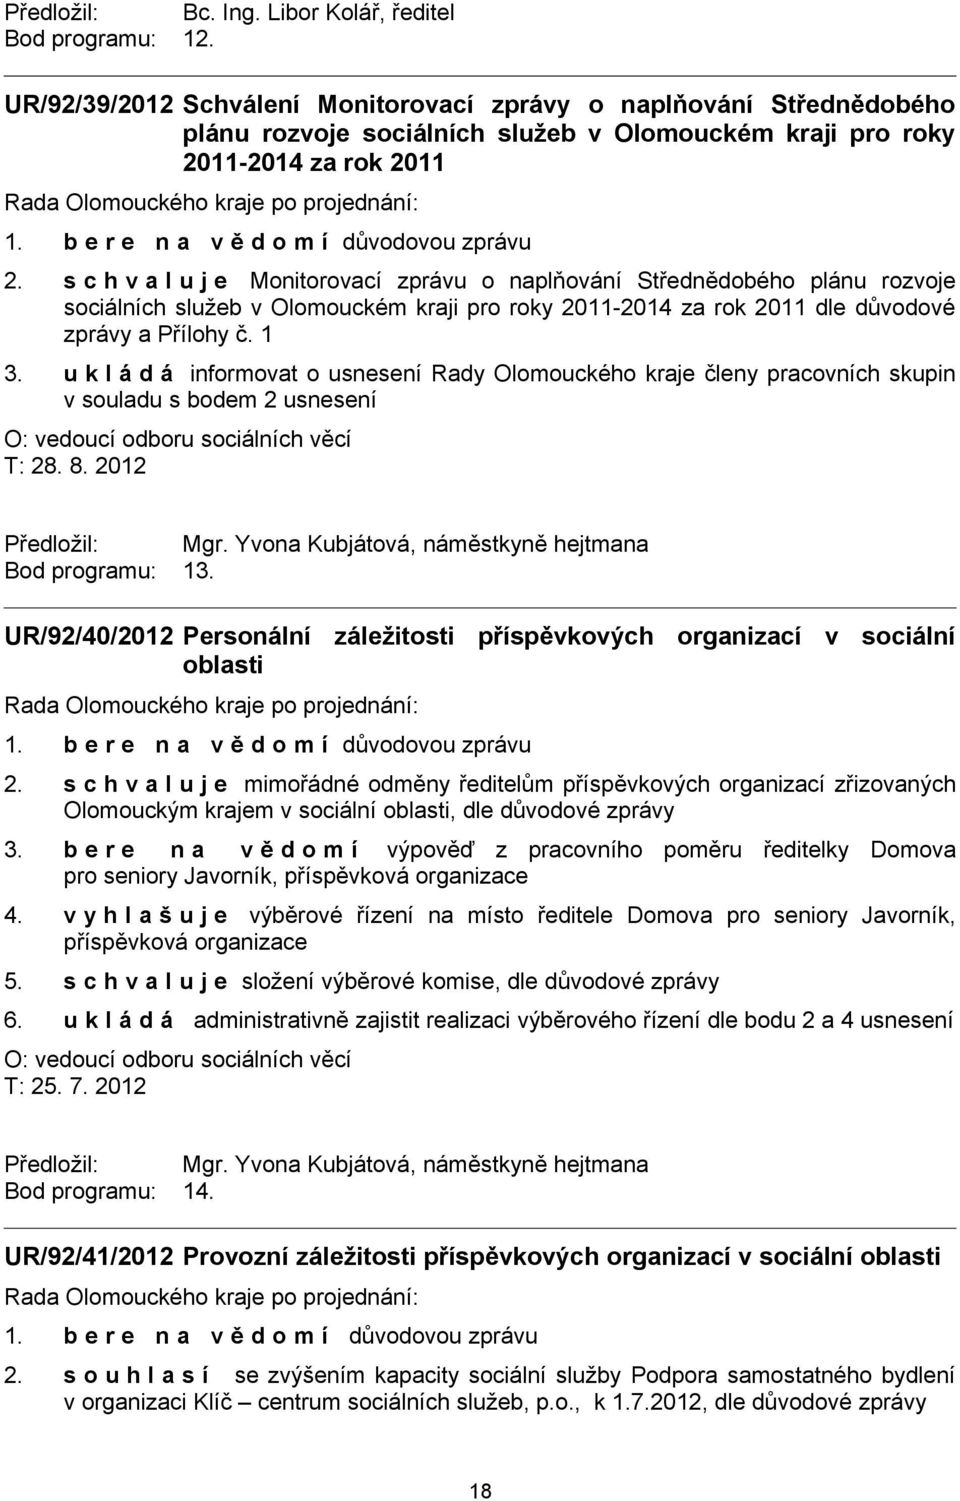 s c h v a l u j e Monitorovací zprávu o naplňování Střednědobého plánu rozvoje sociálních služeb v Olomouckém kraji pro roky 2011-2014 za rok 2011 dle důvodové zprávy a Přílohy č. 1 3.